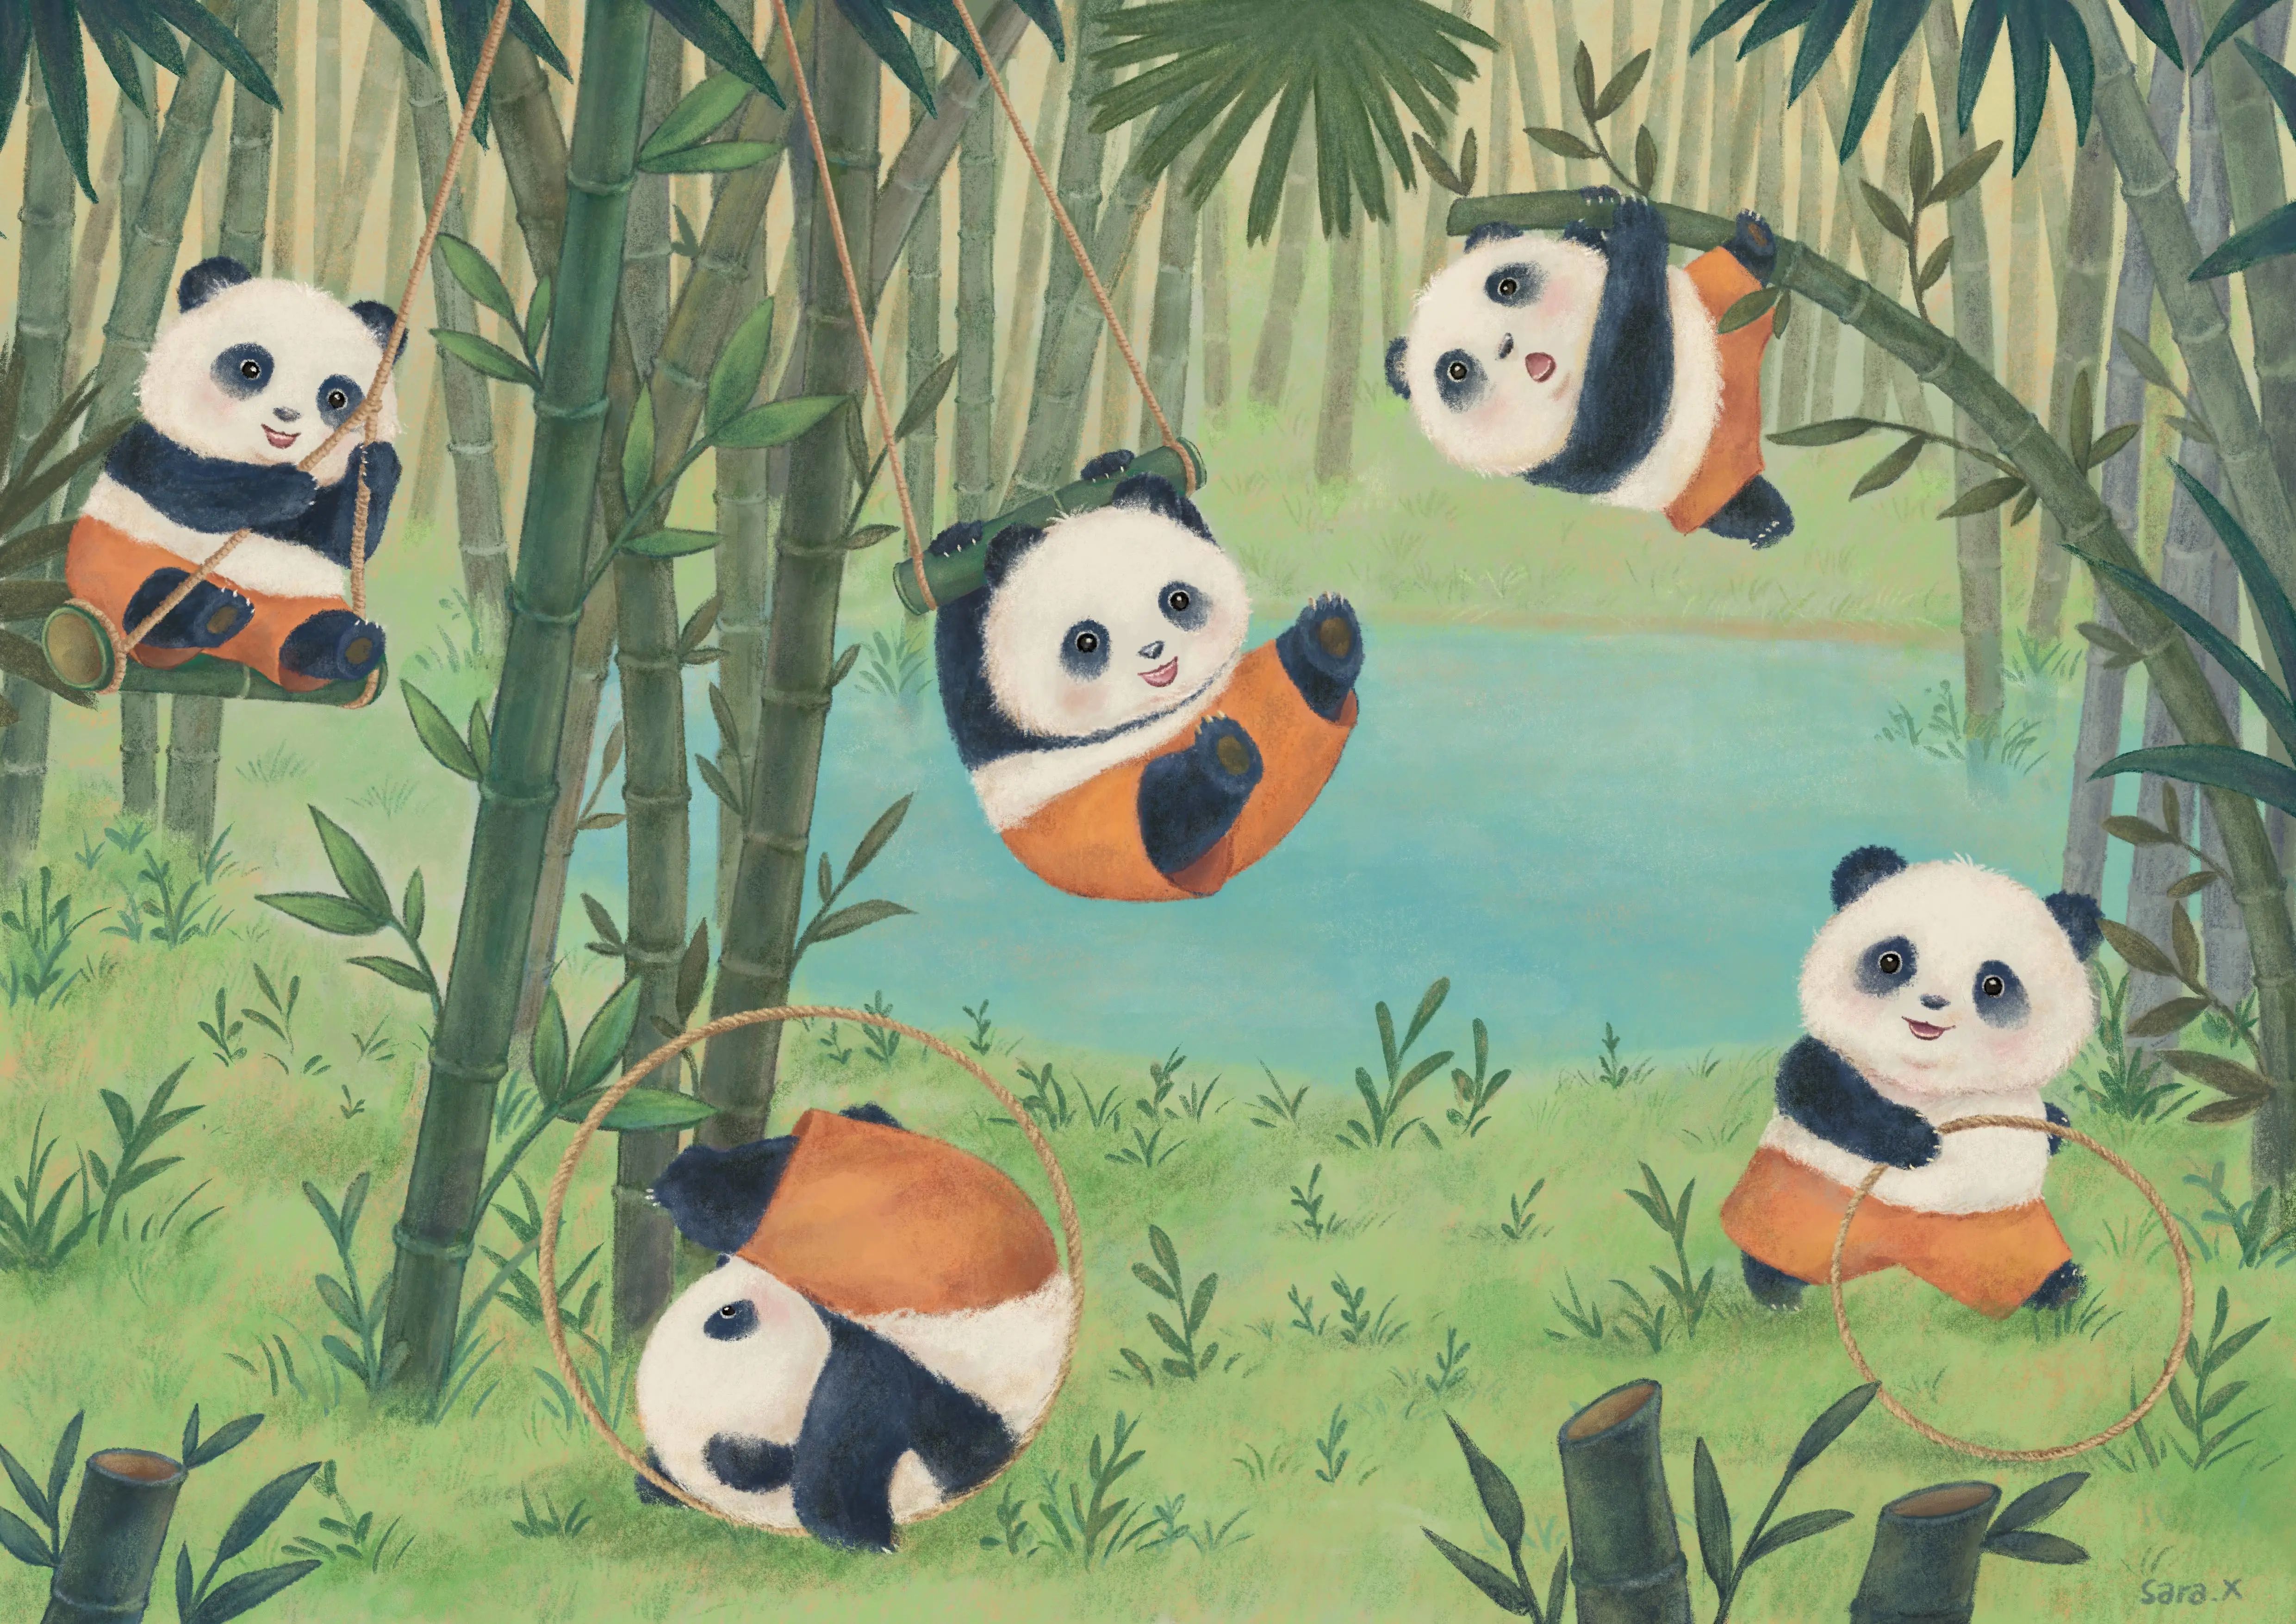 让熊猫不只是熊猫第二届全球熊猫主题插画大赛获奖名单及获奖作品